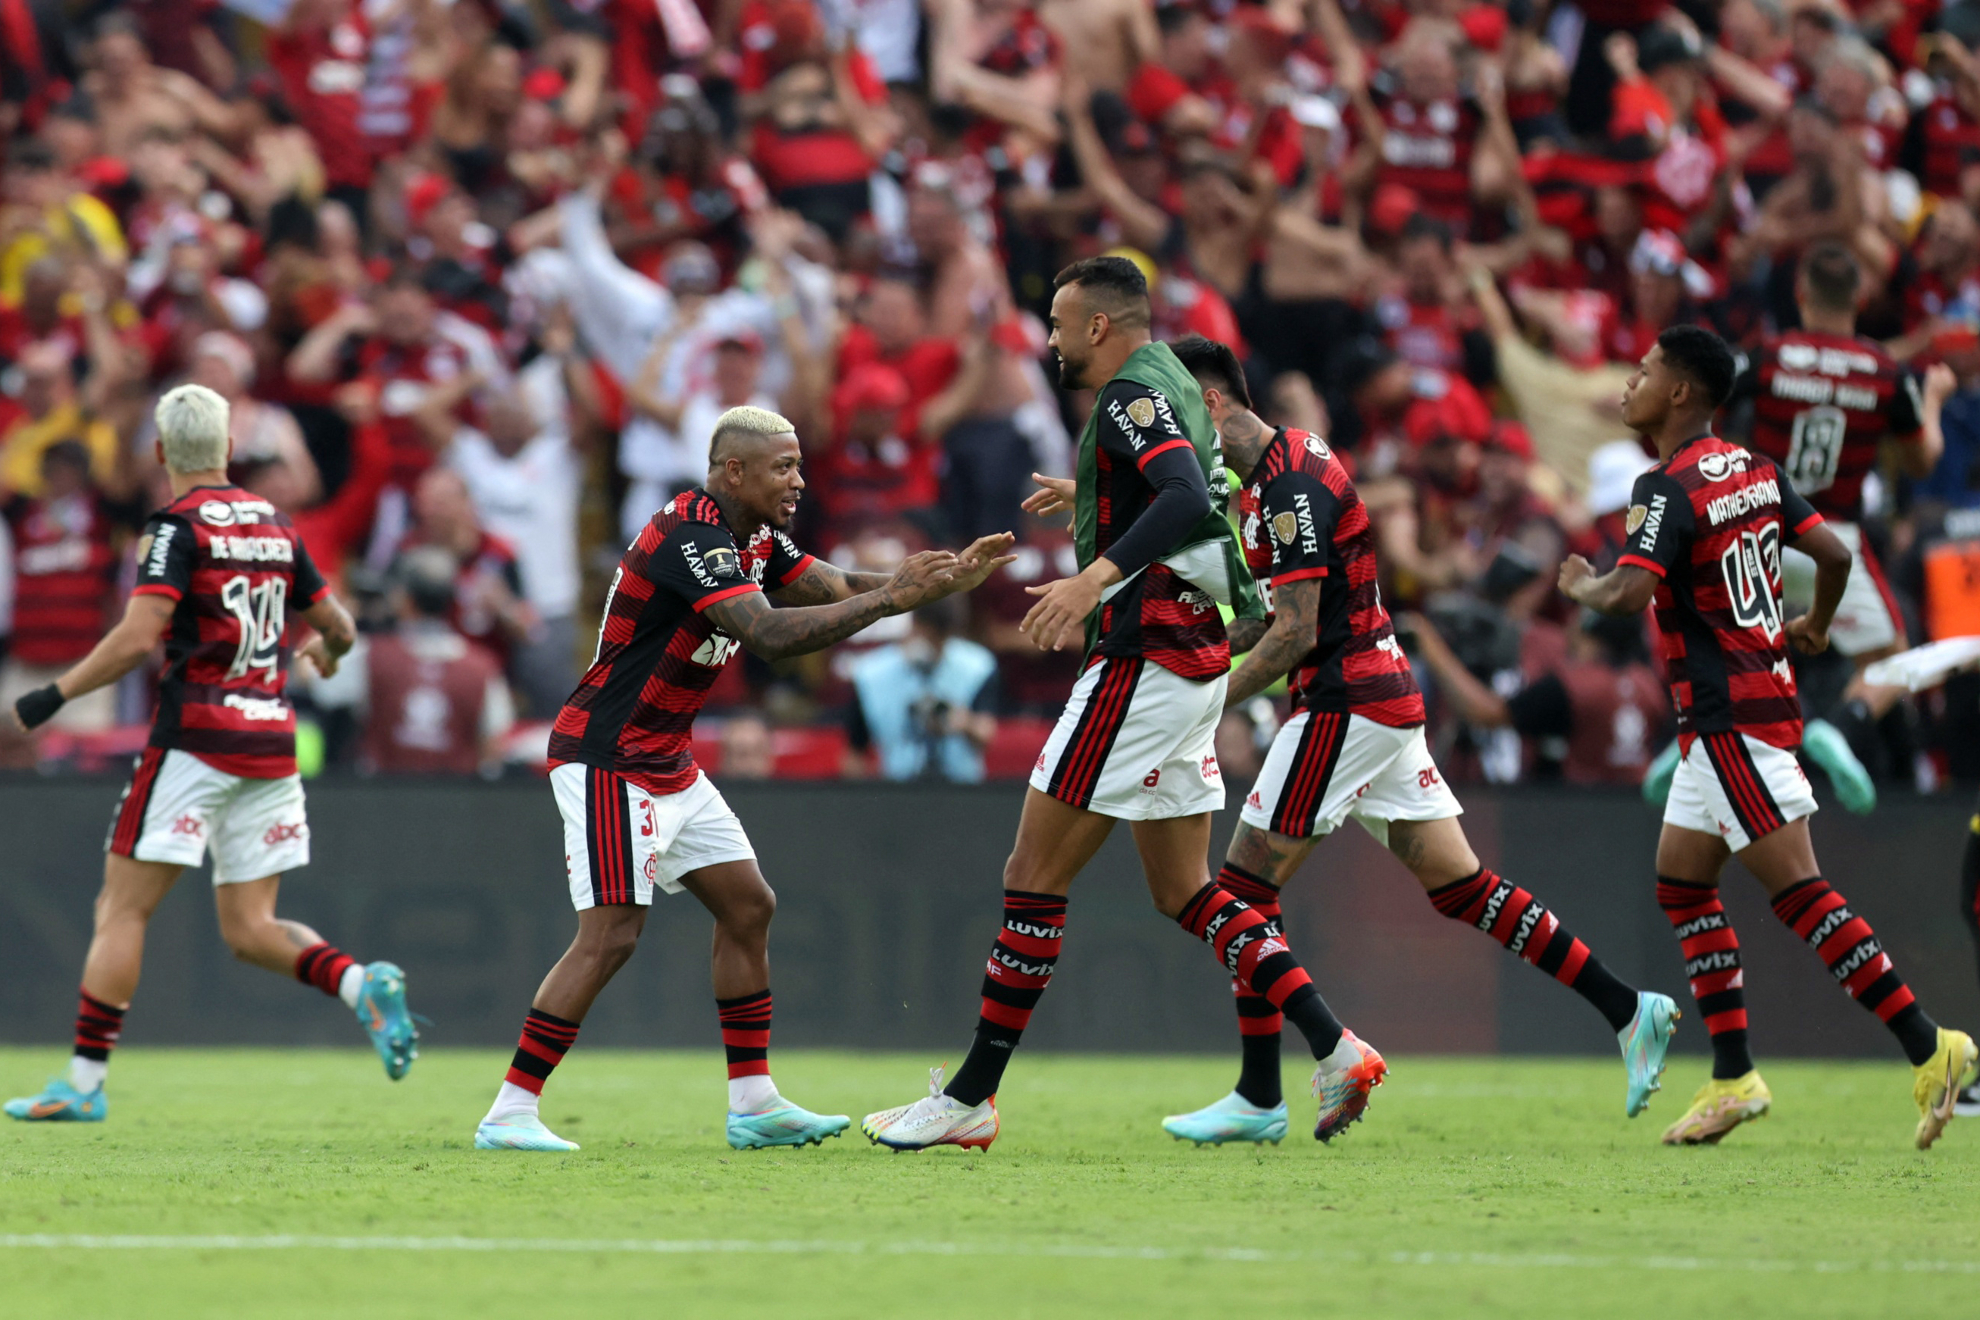 ¡Flamengo vuelve a alzar la copa! El Mengao celebra ante su gente en la ciudad de Guayaquil